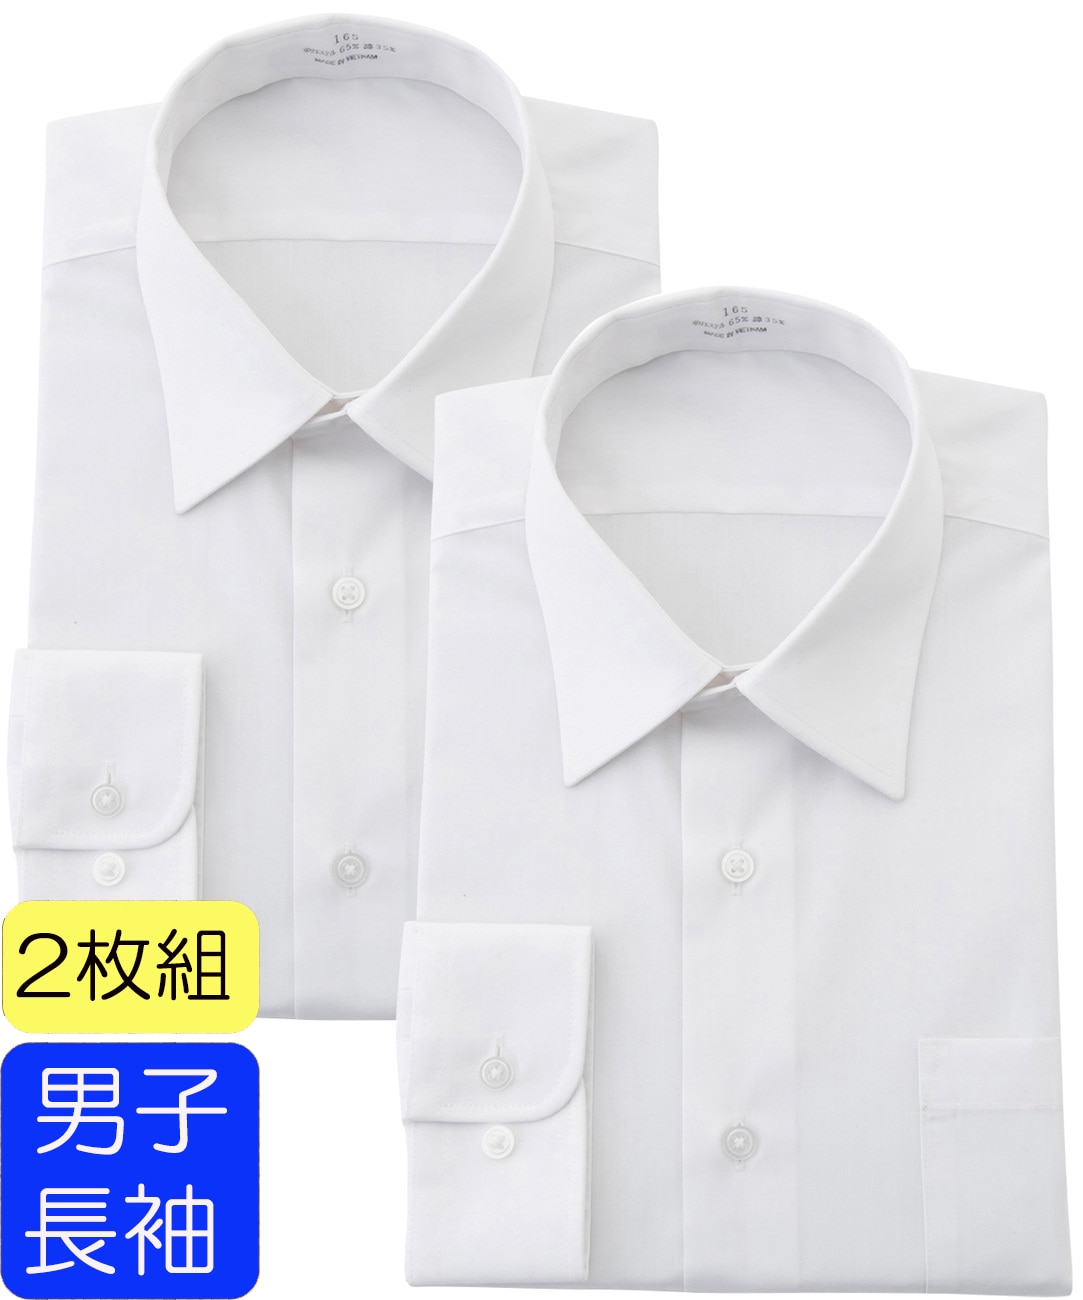 売上実績NO.1 スクールシャツ 155cm 白 半袖